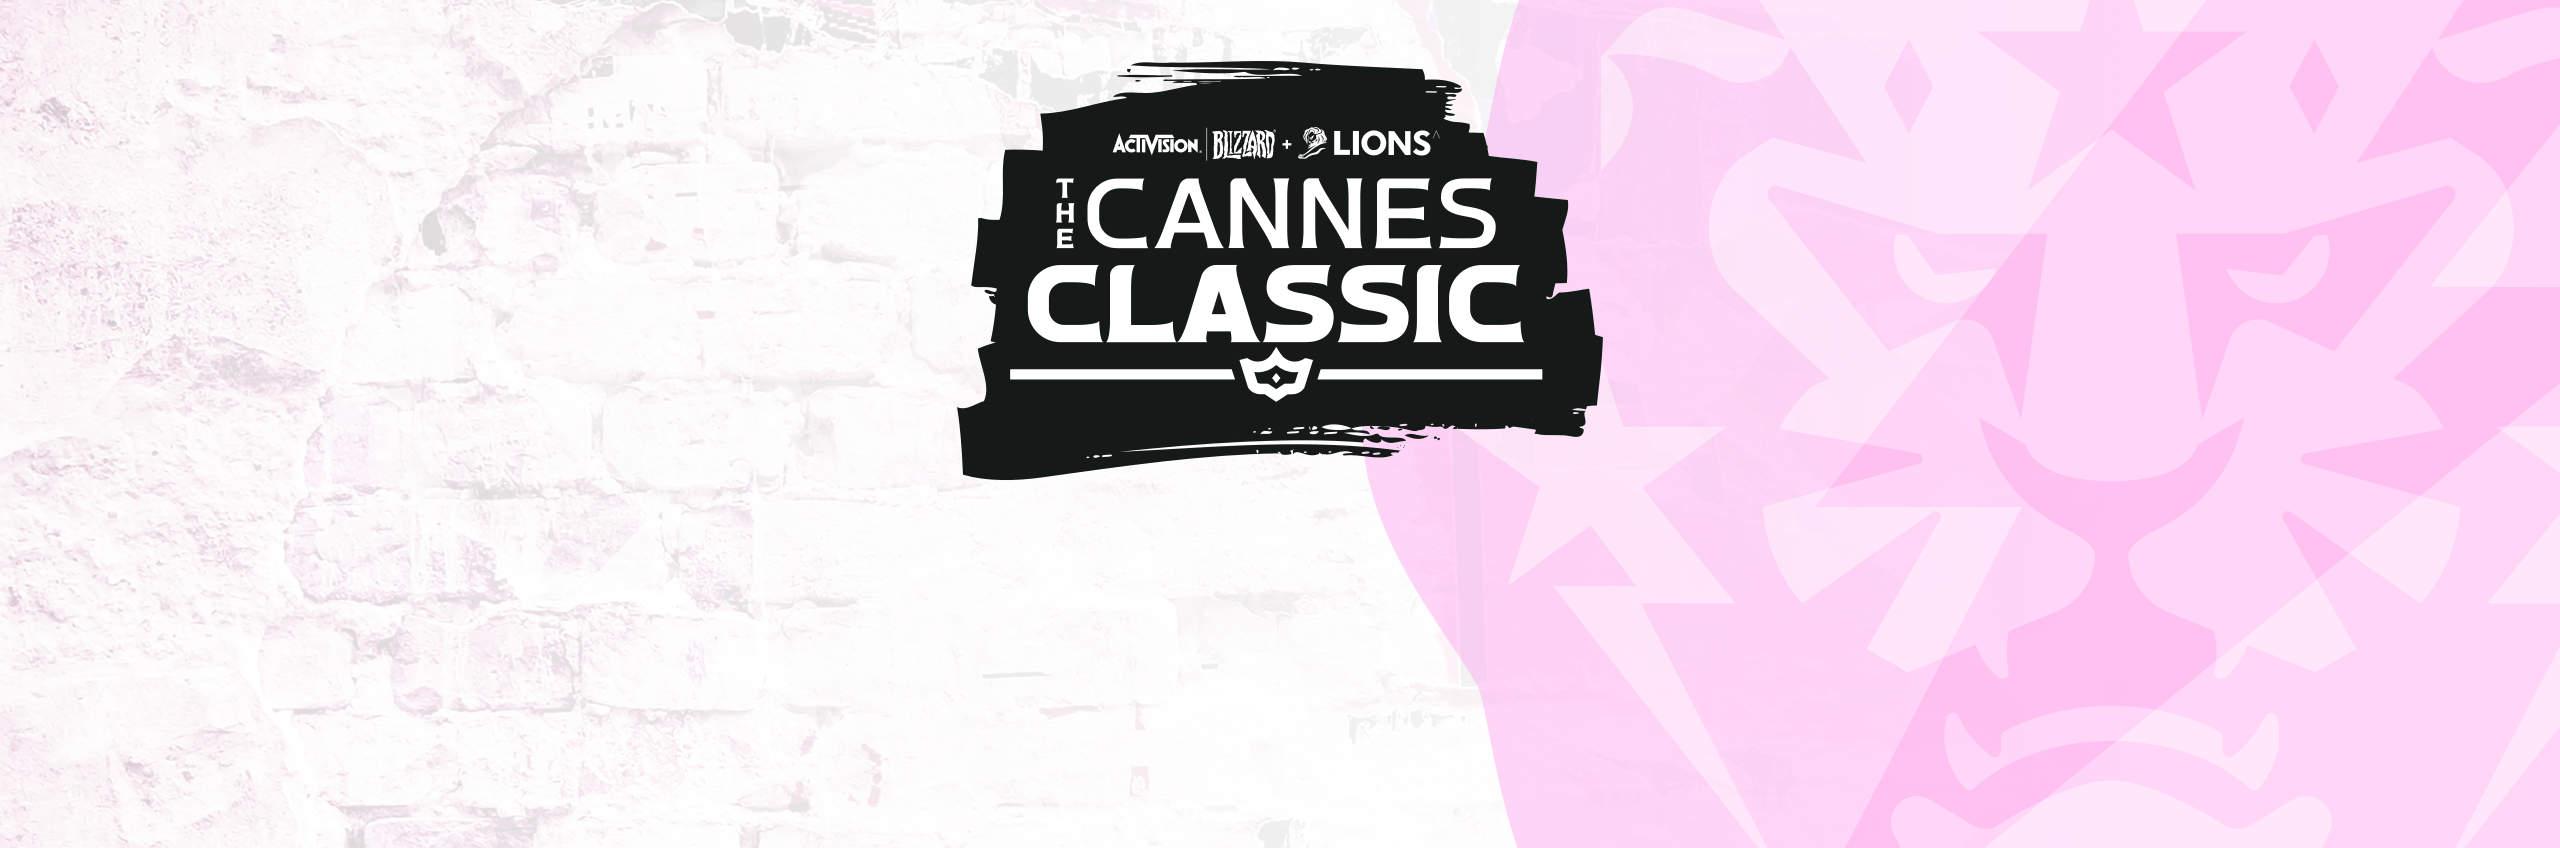 Evento esports Cannes Classic di Activision Blizzard Media